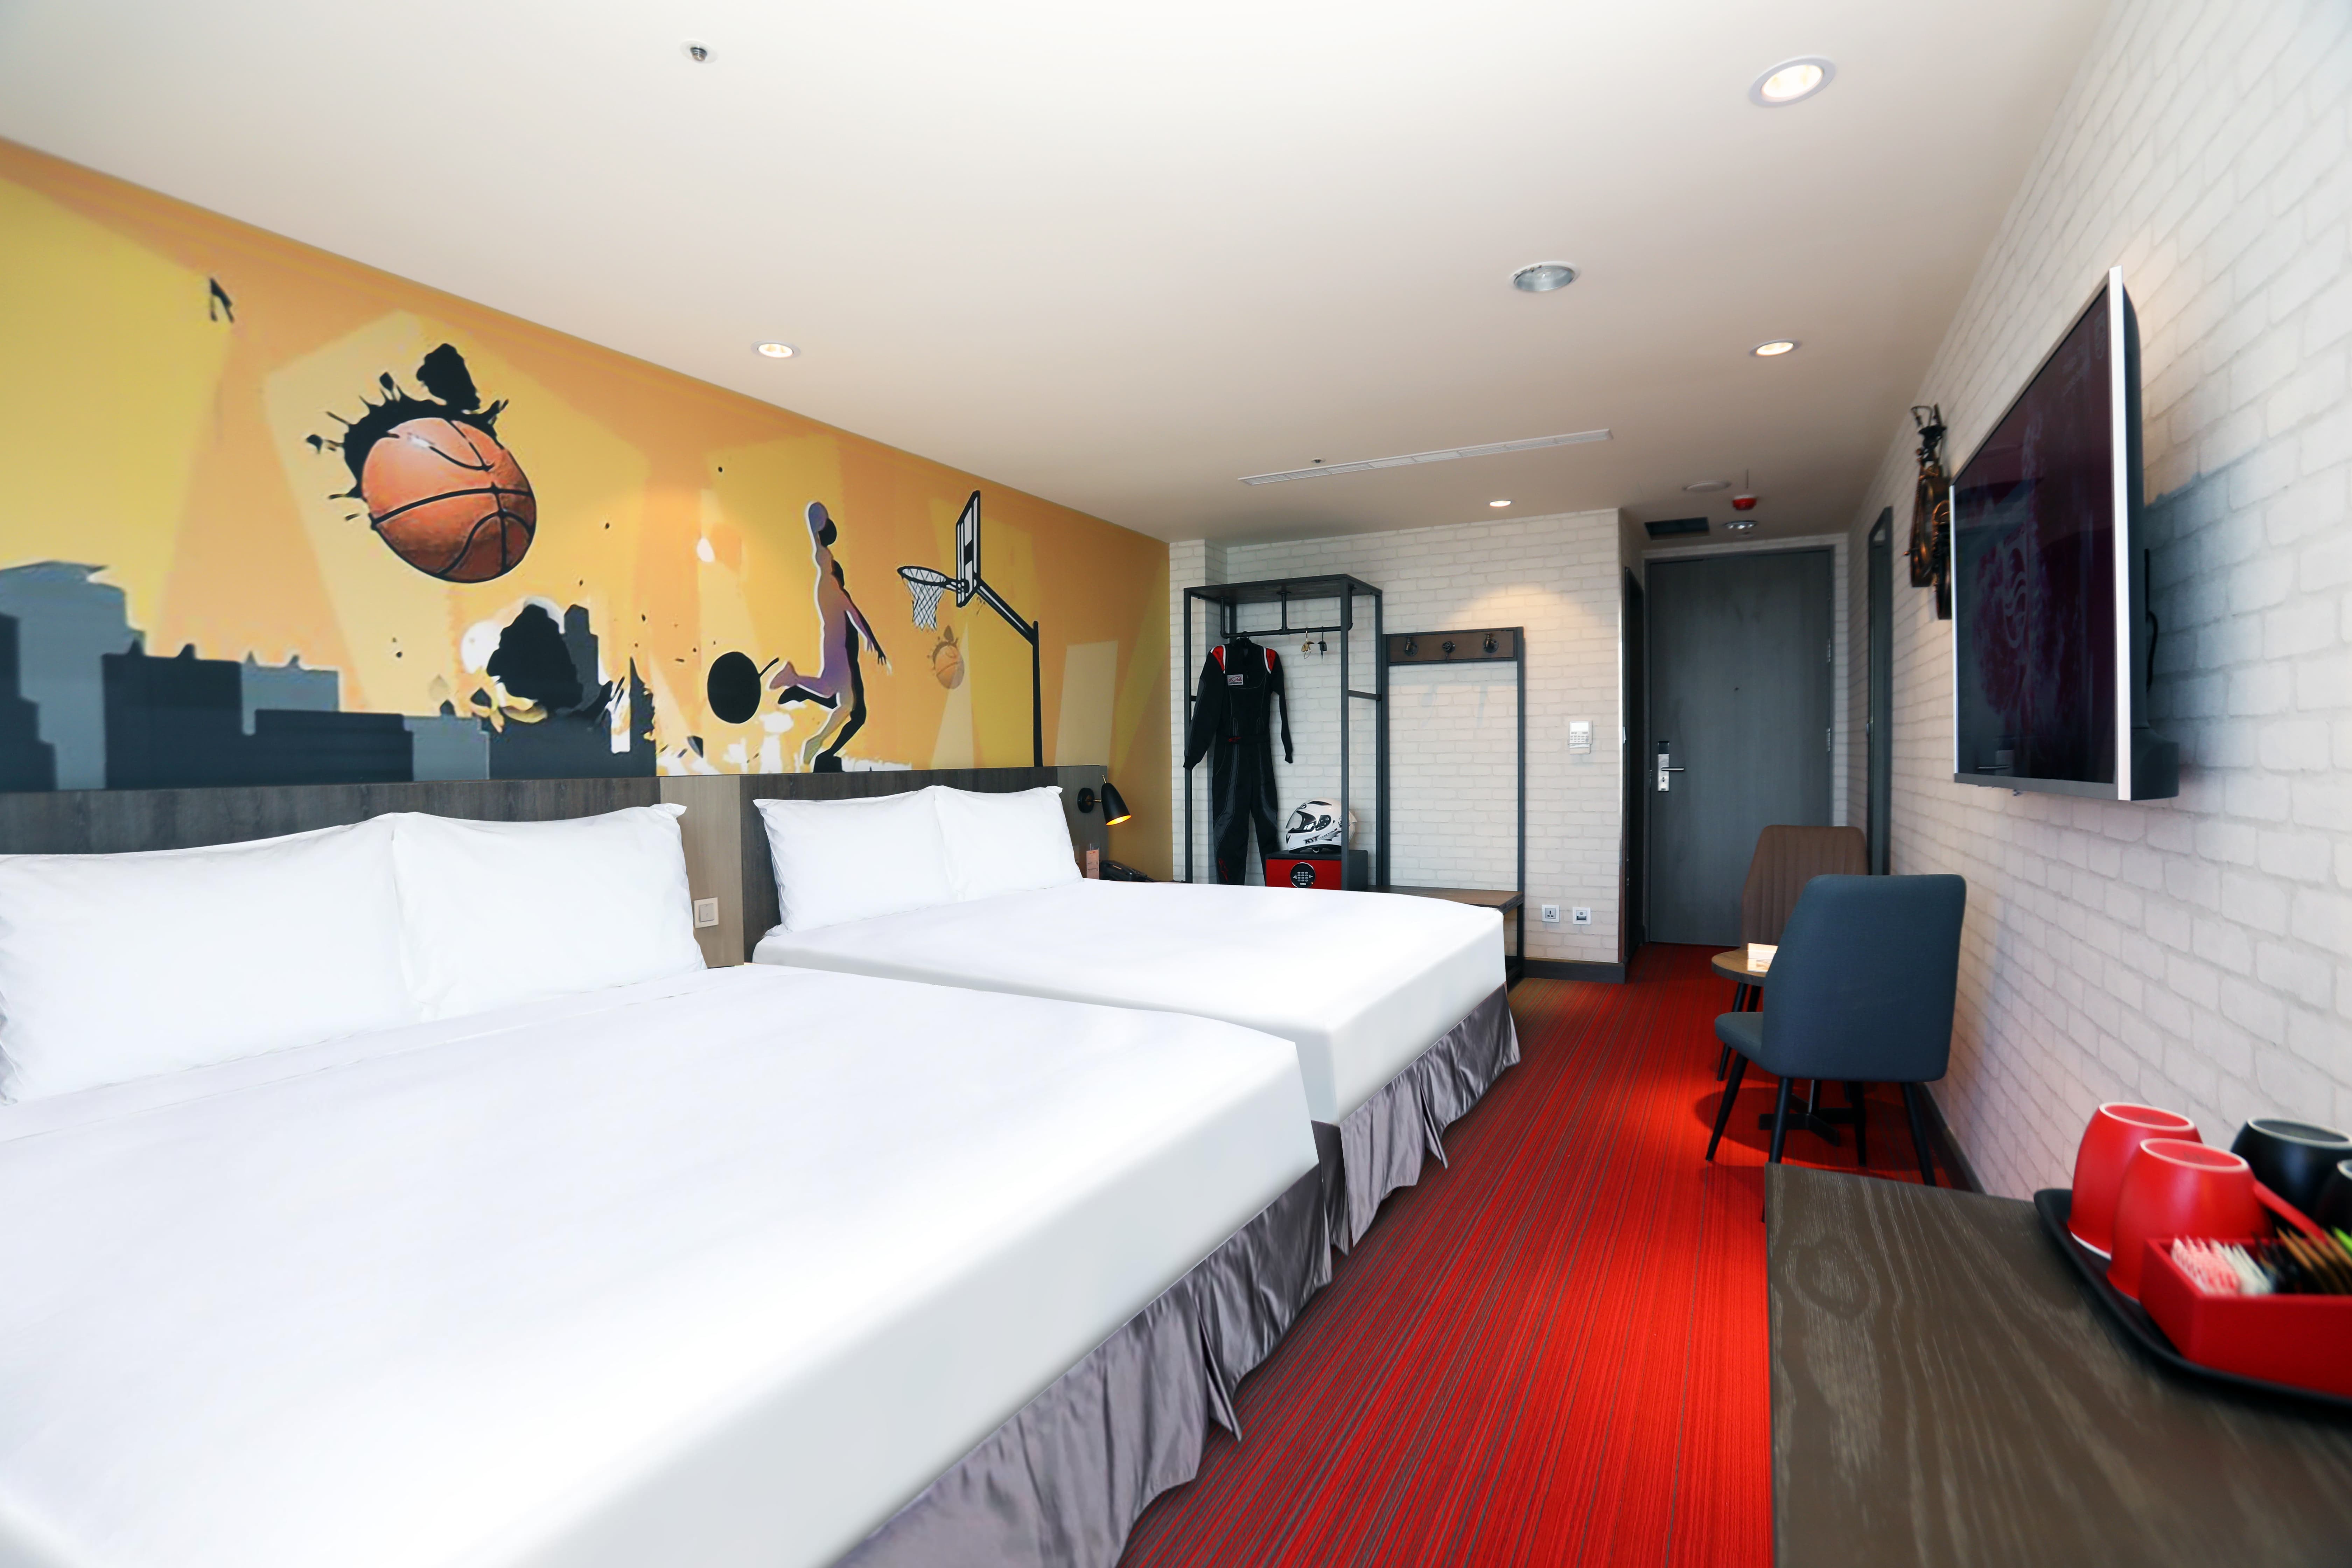 05 極限客房(2大床)，旅店設計風格以賽車及運動風呈現。.jpg